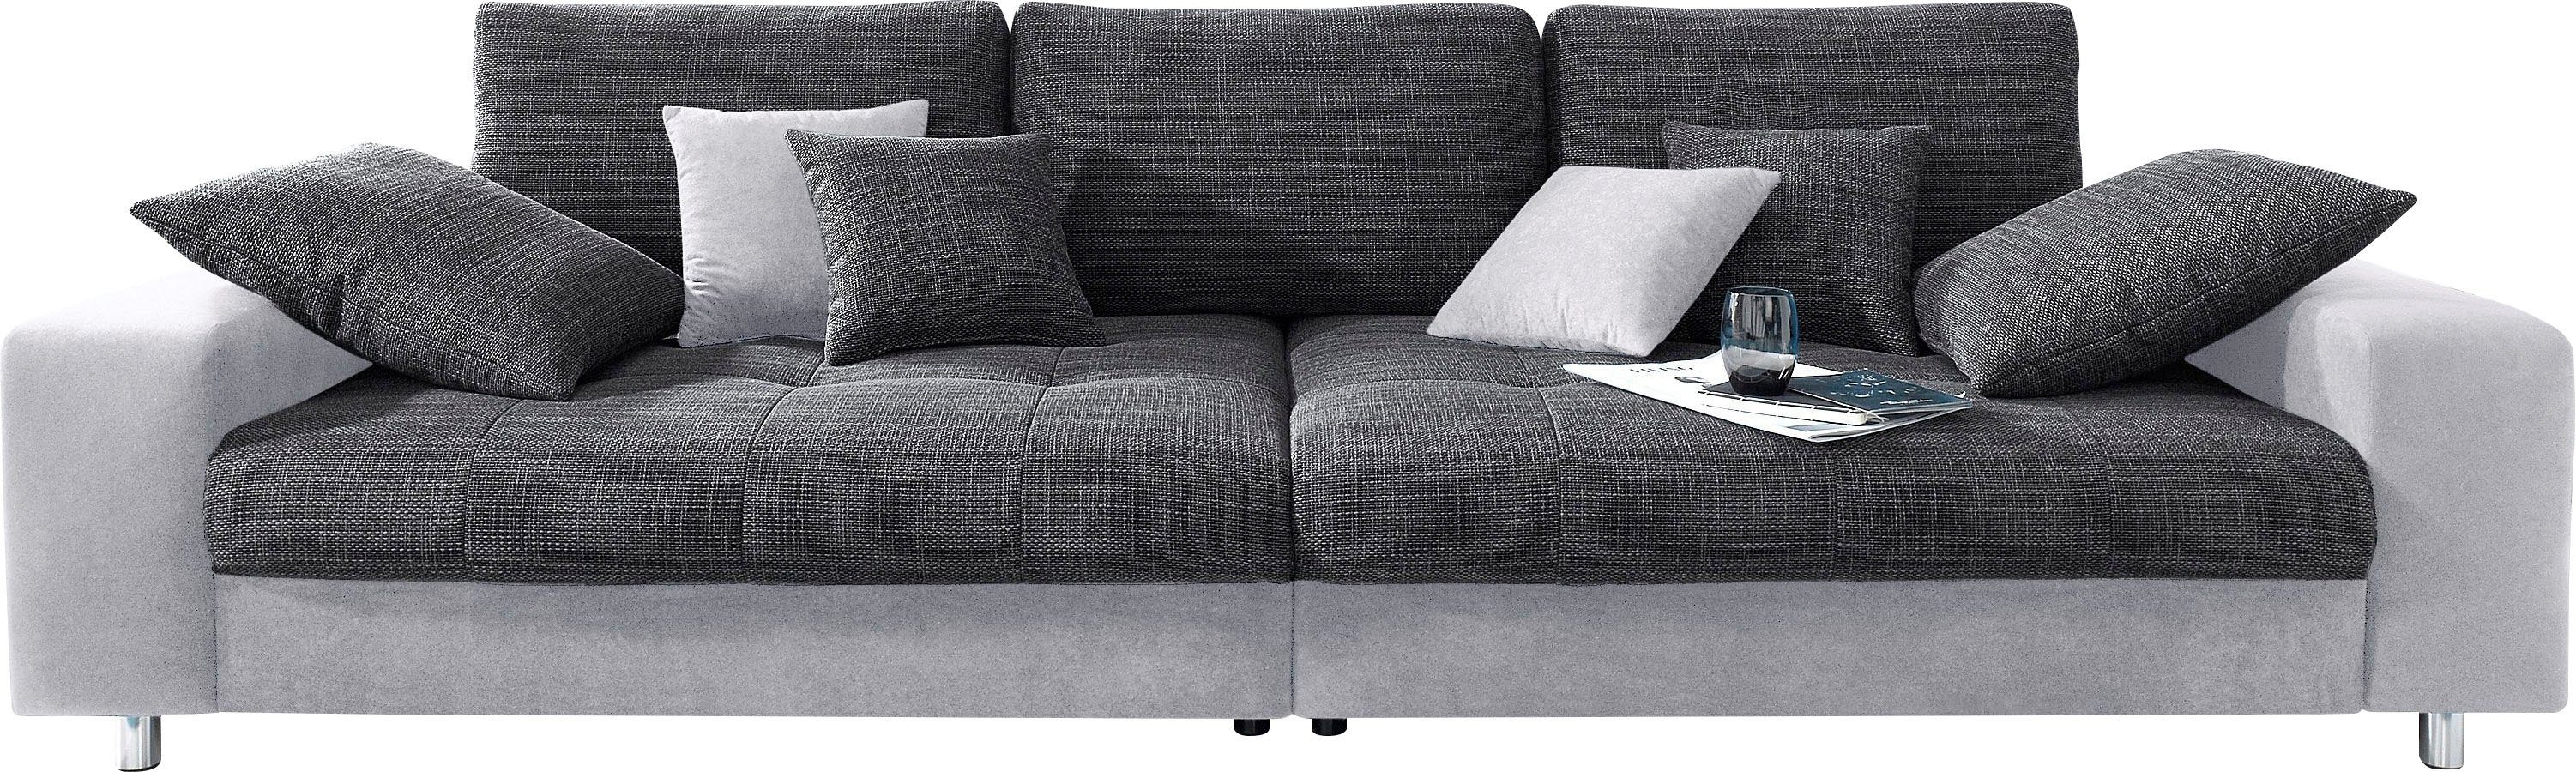 Mr. Couch Big-Sofa Tobi, wahlweise mit Kaltschaum (140kg Belastung/Sitz)  und RGB-Beleuchtung